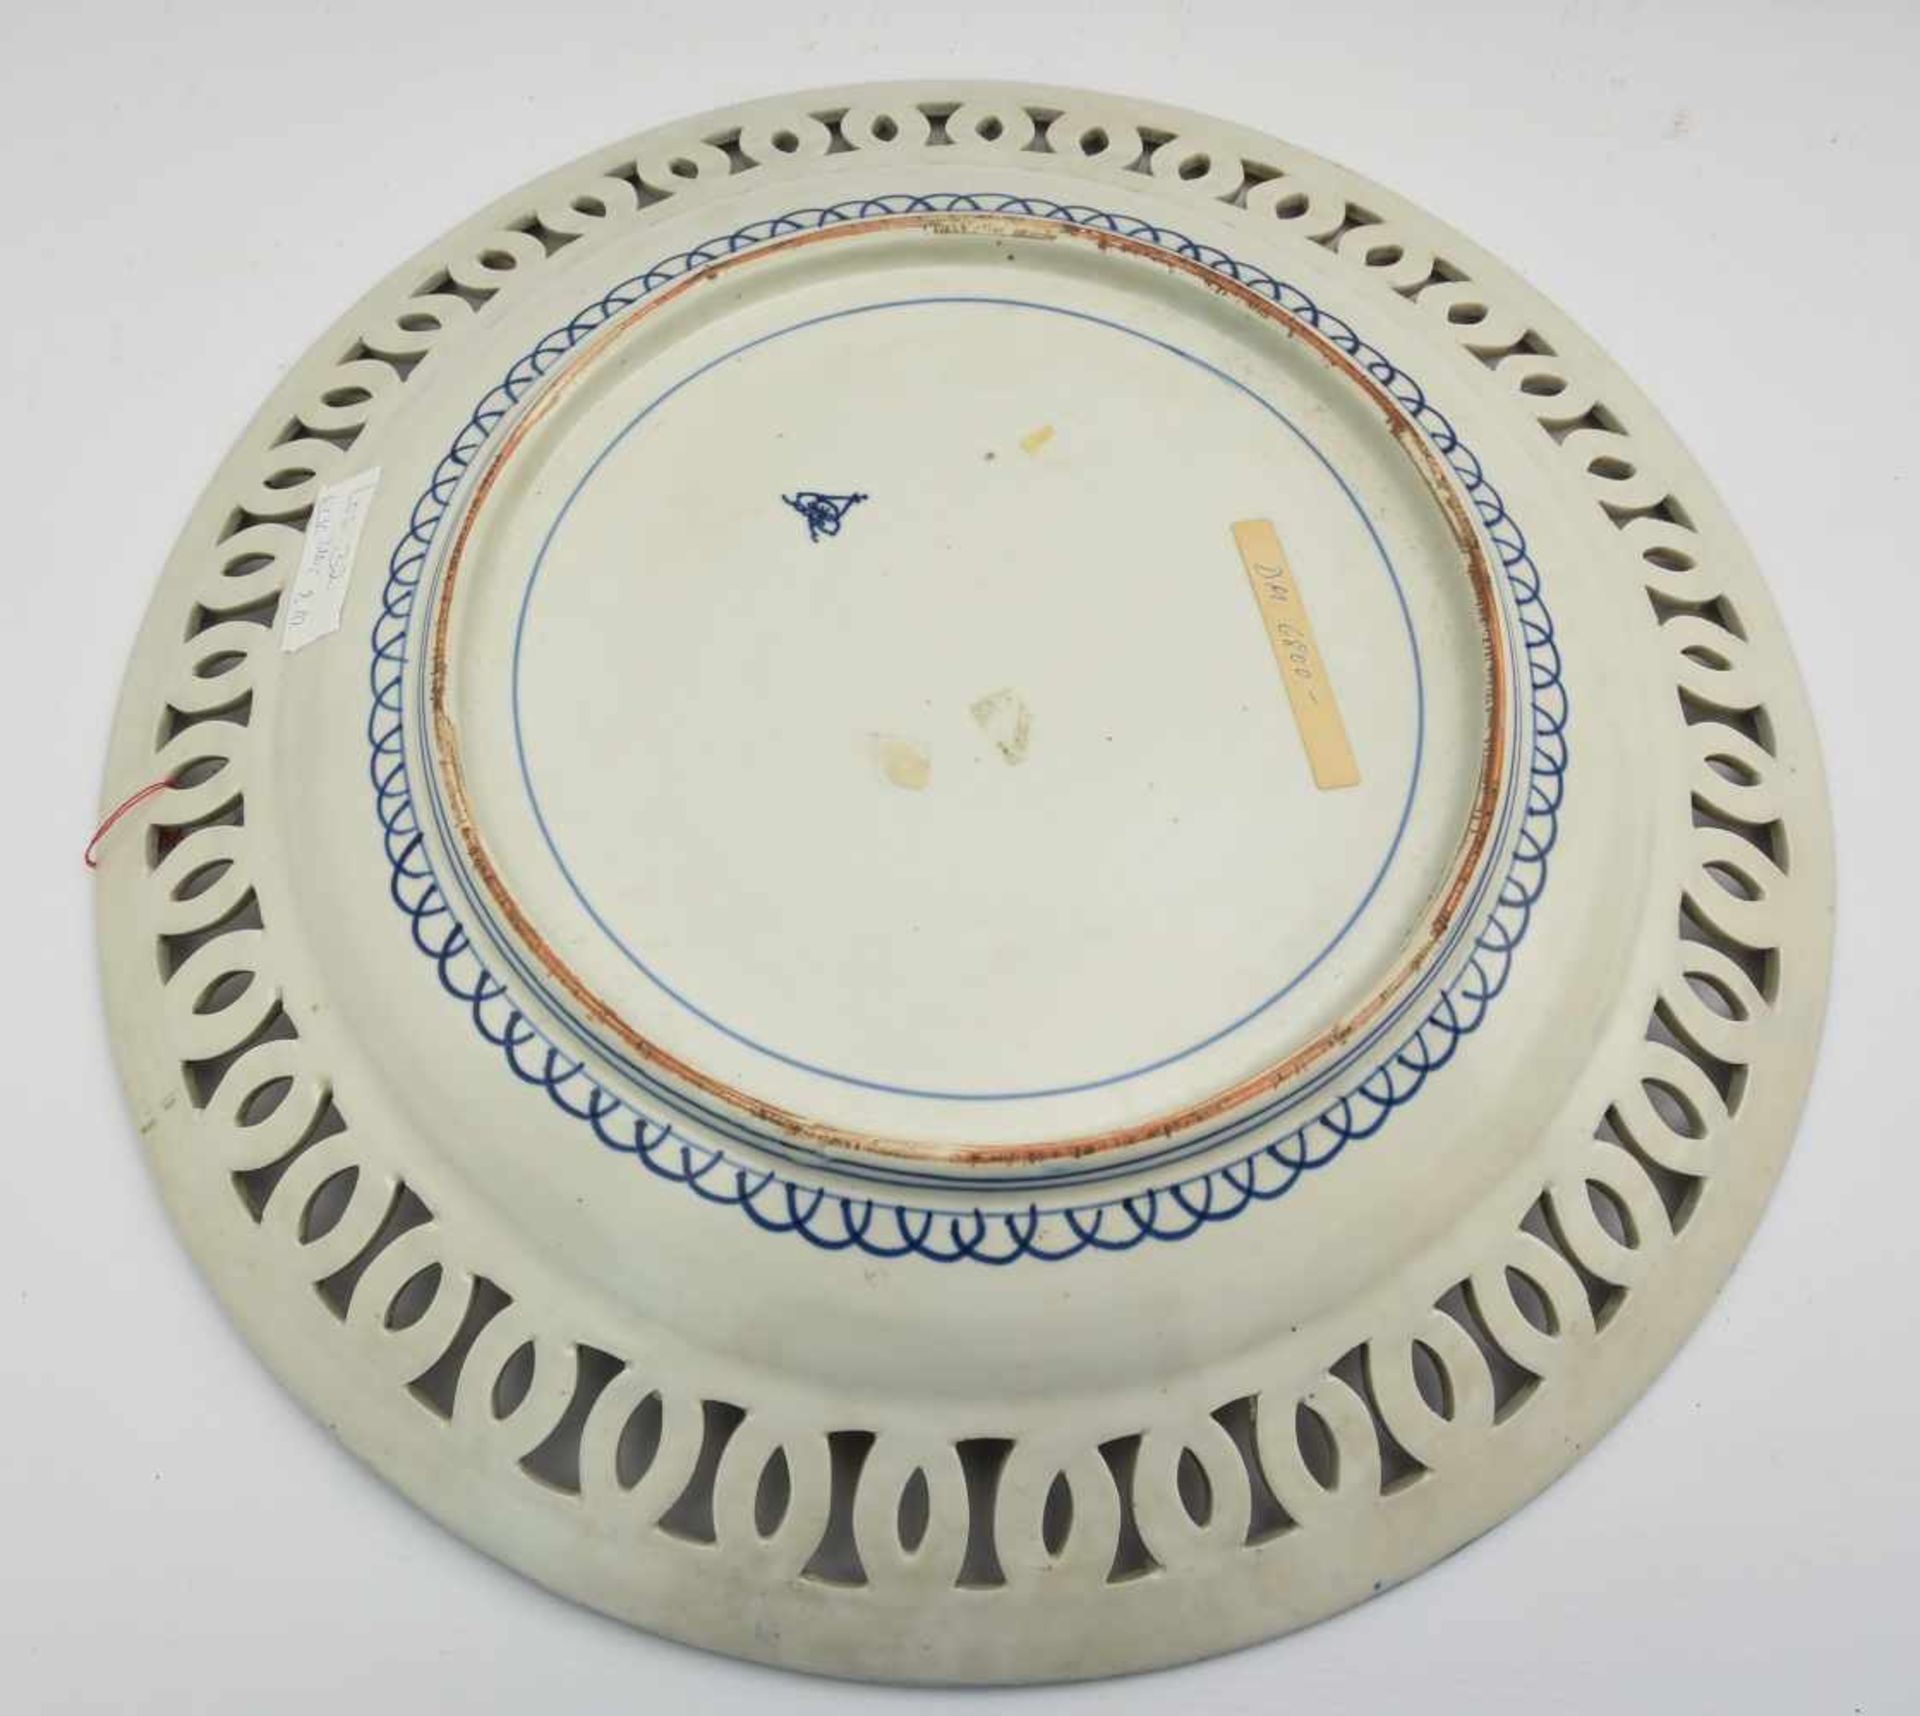 IMAVI- TELLER, bemaltes und glasiertes Porzellan gemarkt, Japan um 1800 Großer japanischer Teller - Bild 2 aus 4